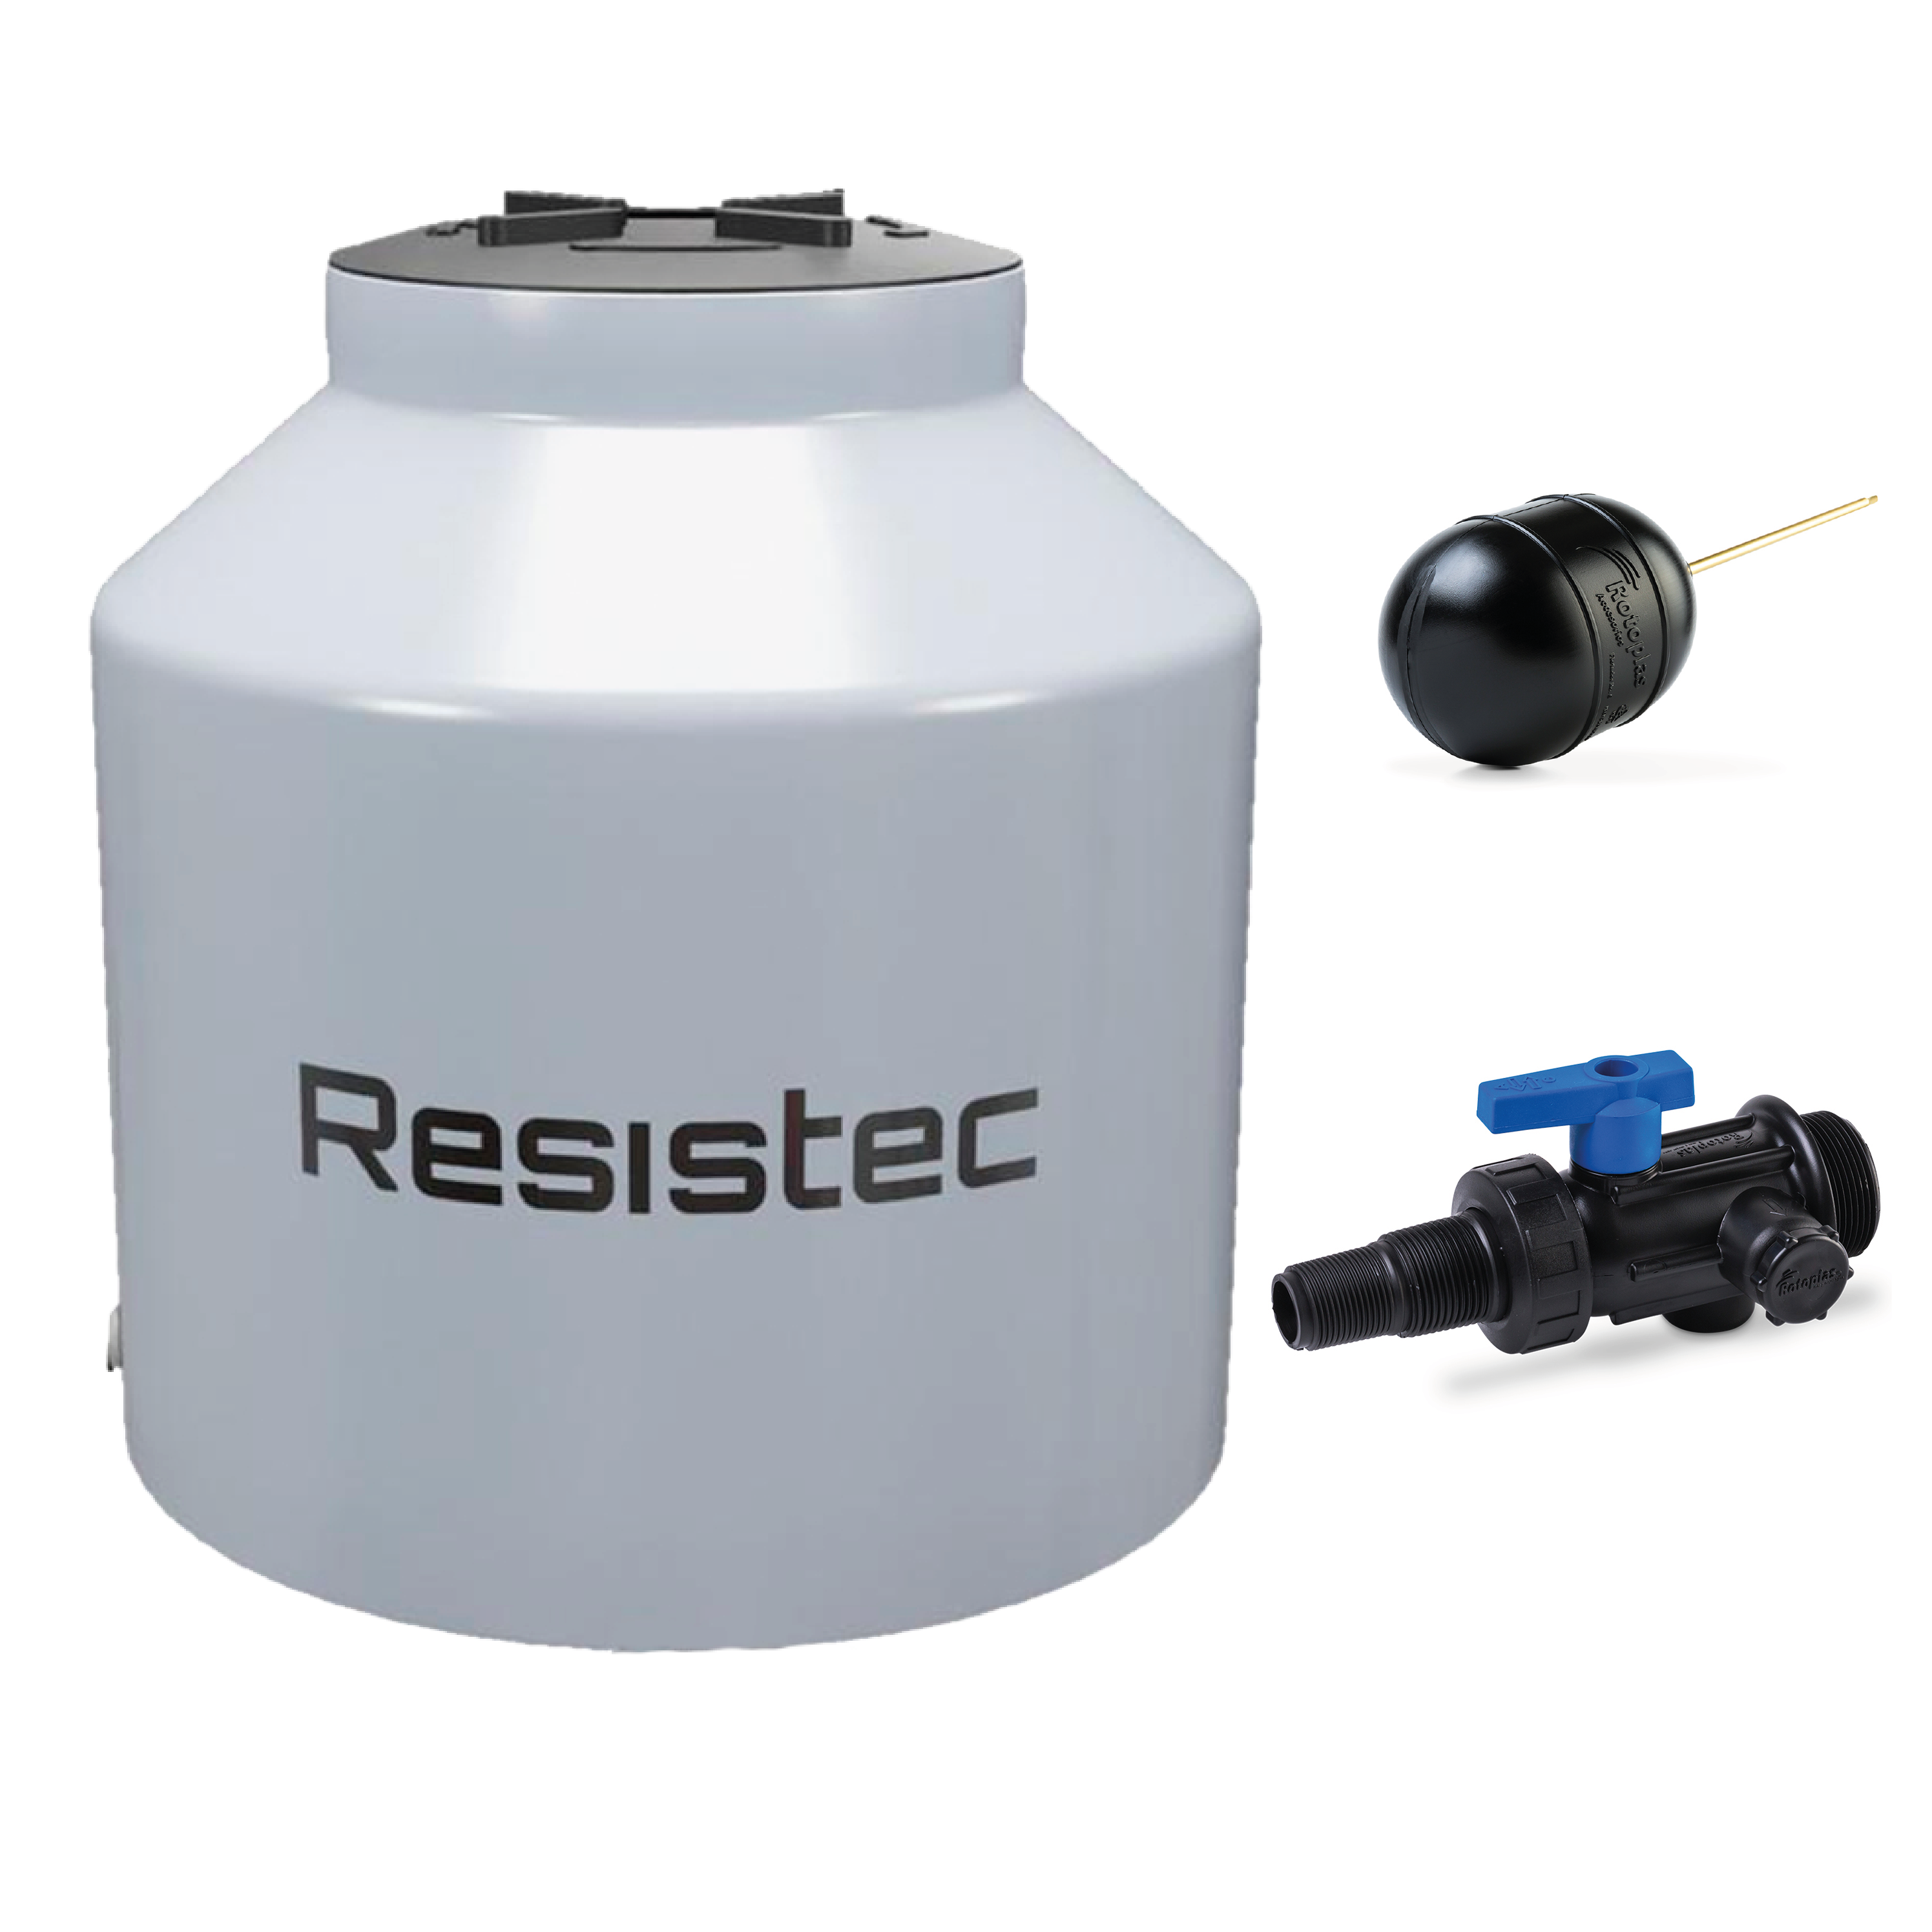 RESISTEC 1100 litros con valvula flotador RESISTEC